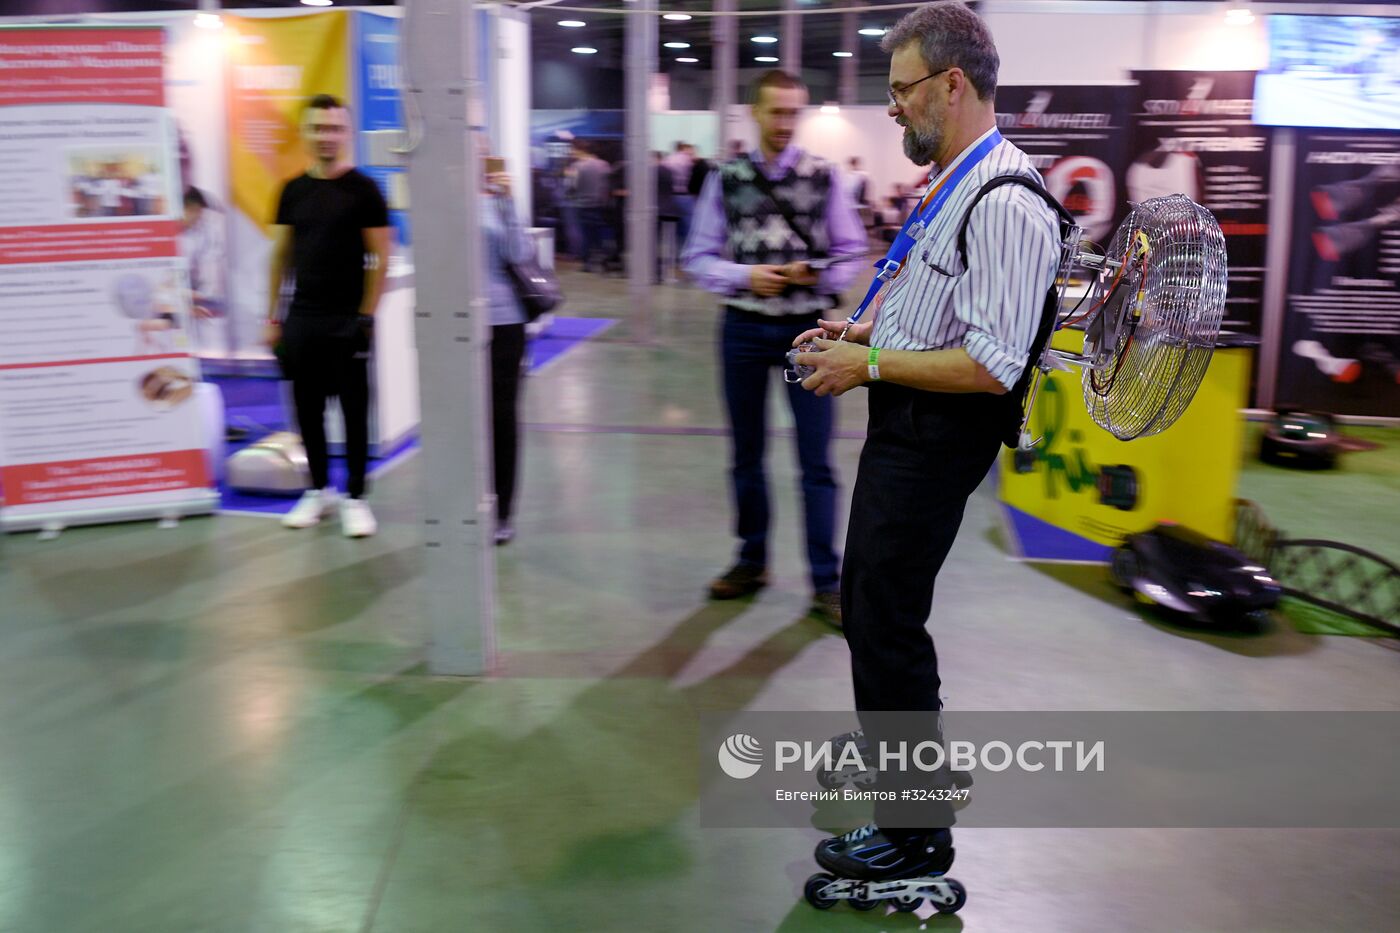 V выставка робототехники и передовых технологий "Robotics Expo - 2017"